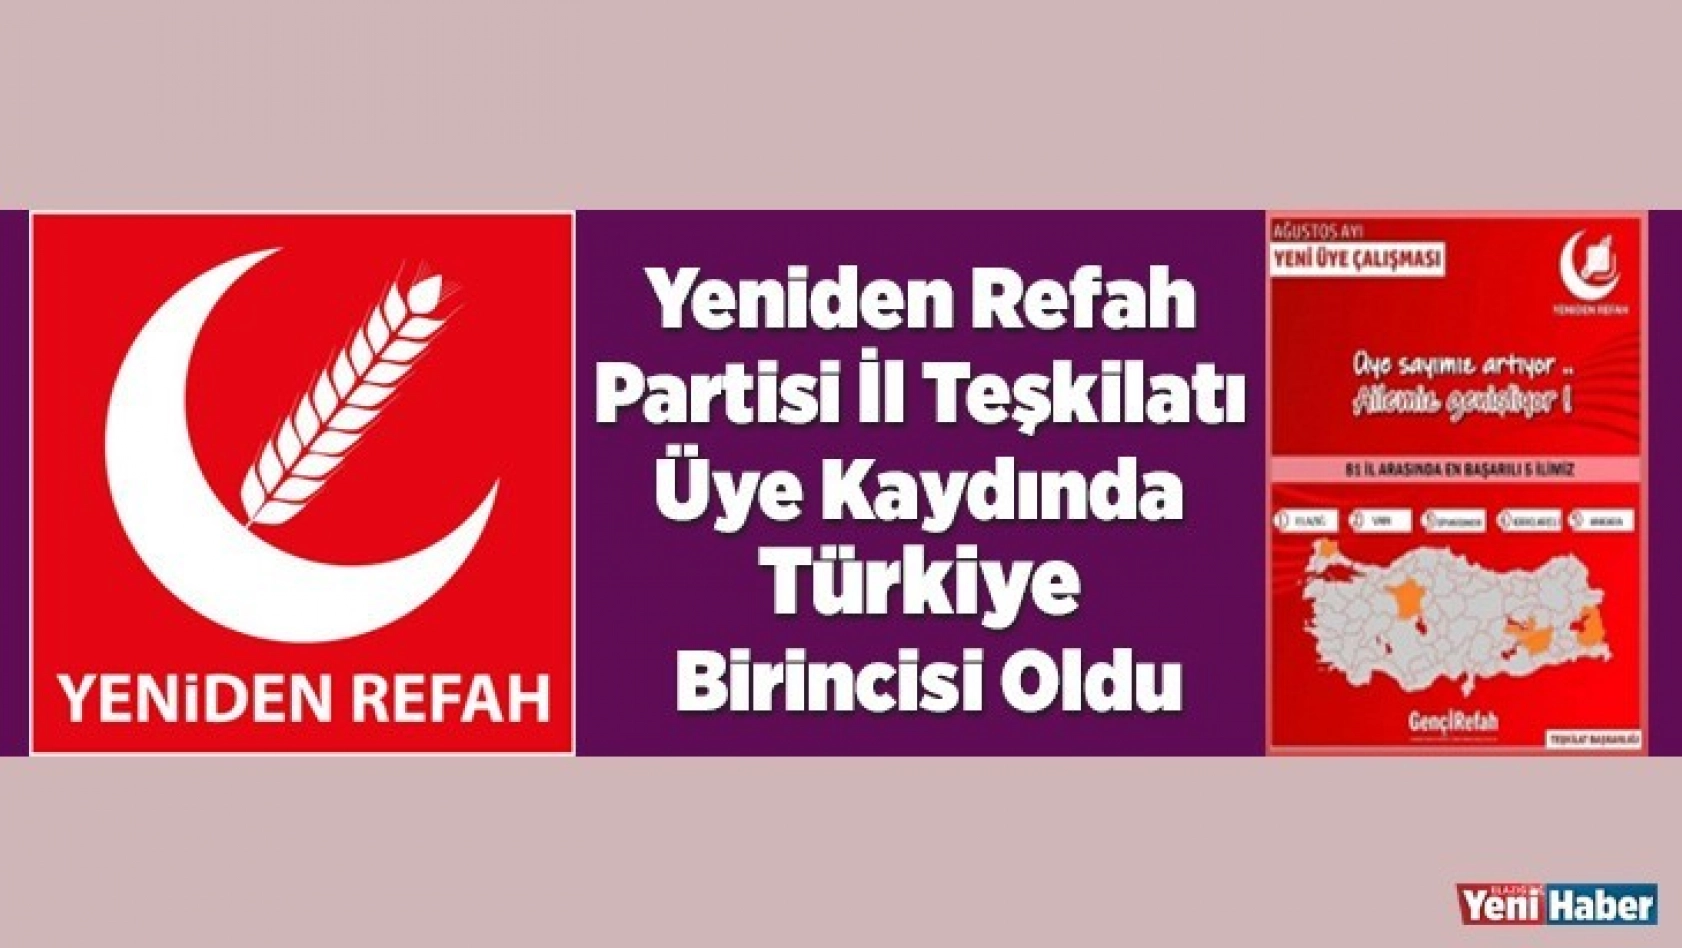 Yeniden Refah Partisi İl Teşkilatı Üye Kaydında Türkiye Birincisi Oldu